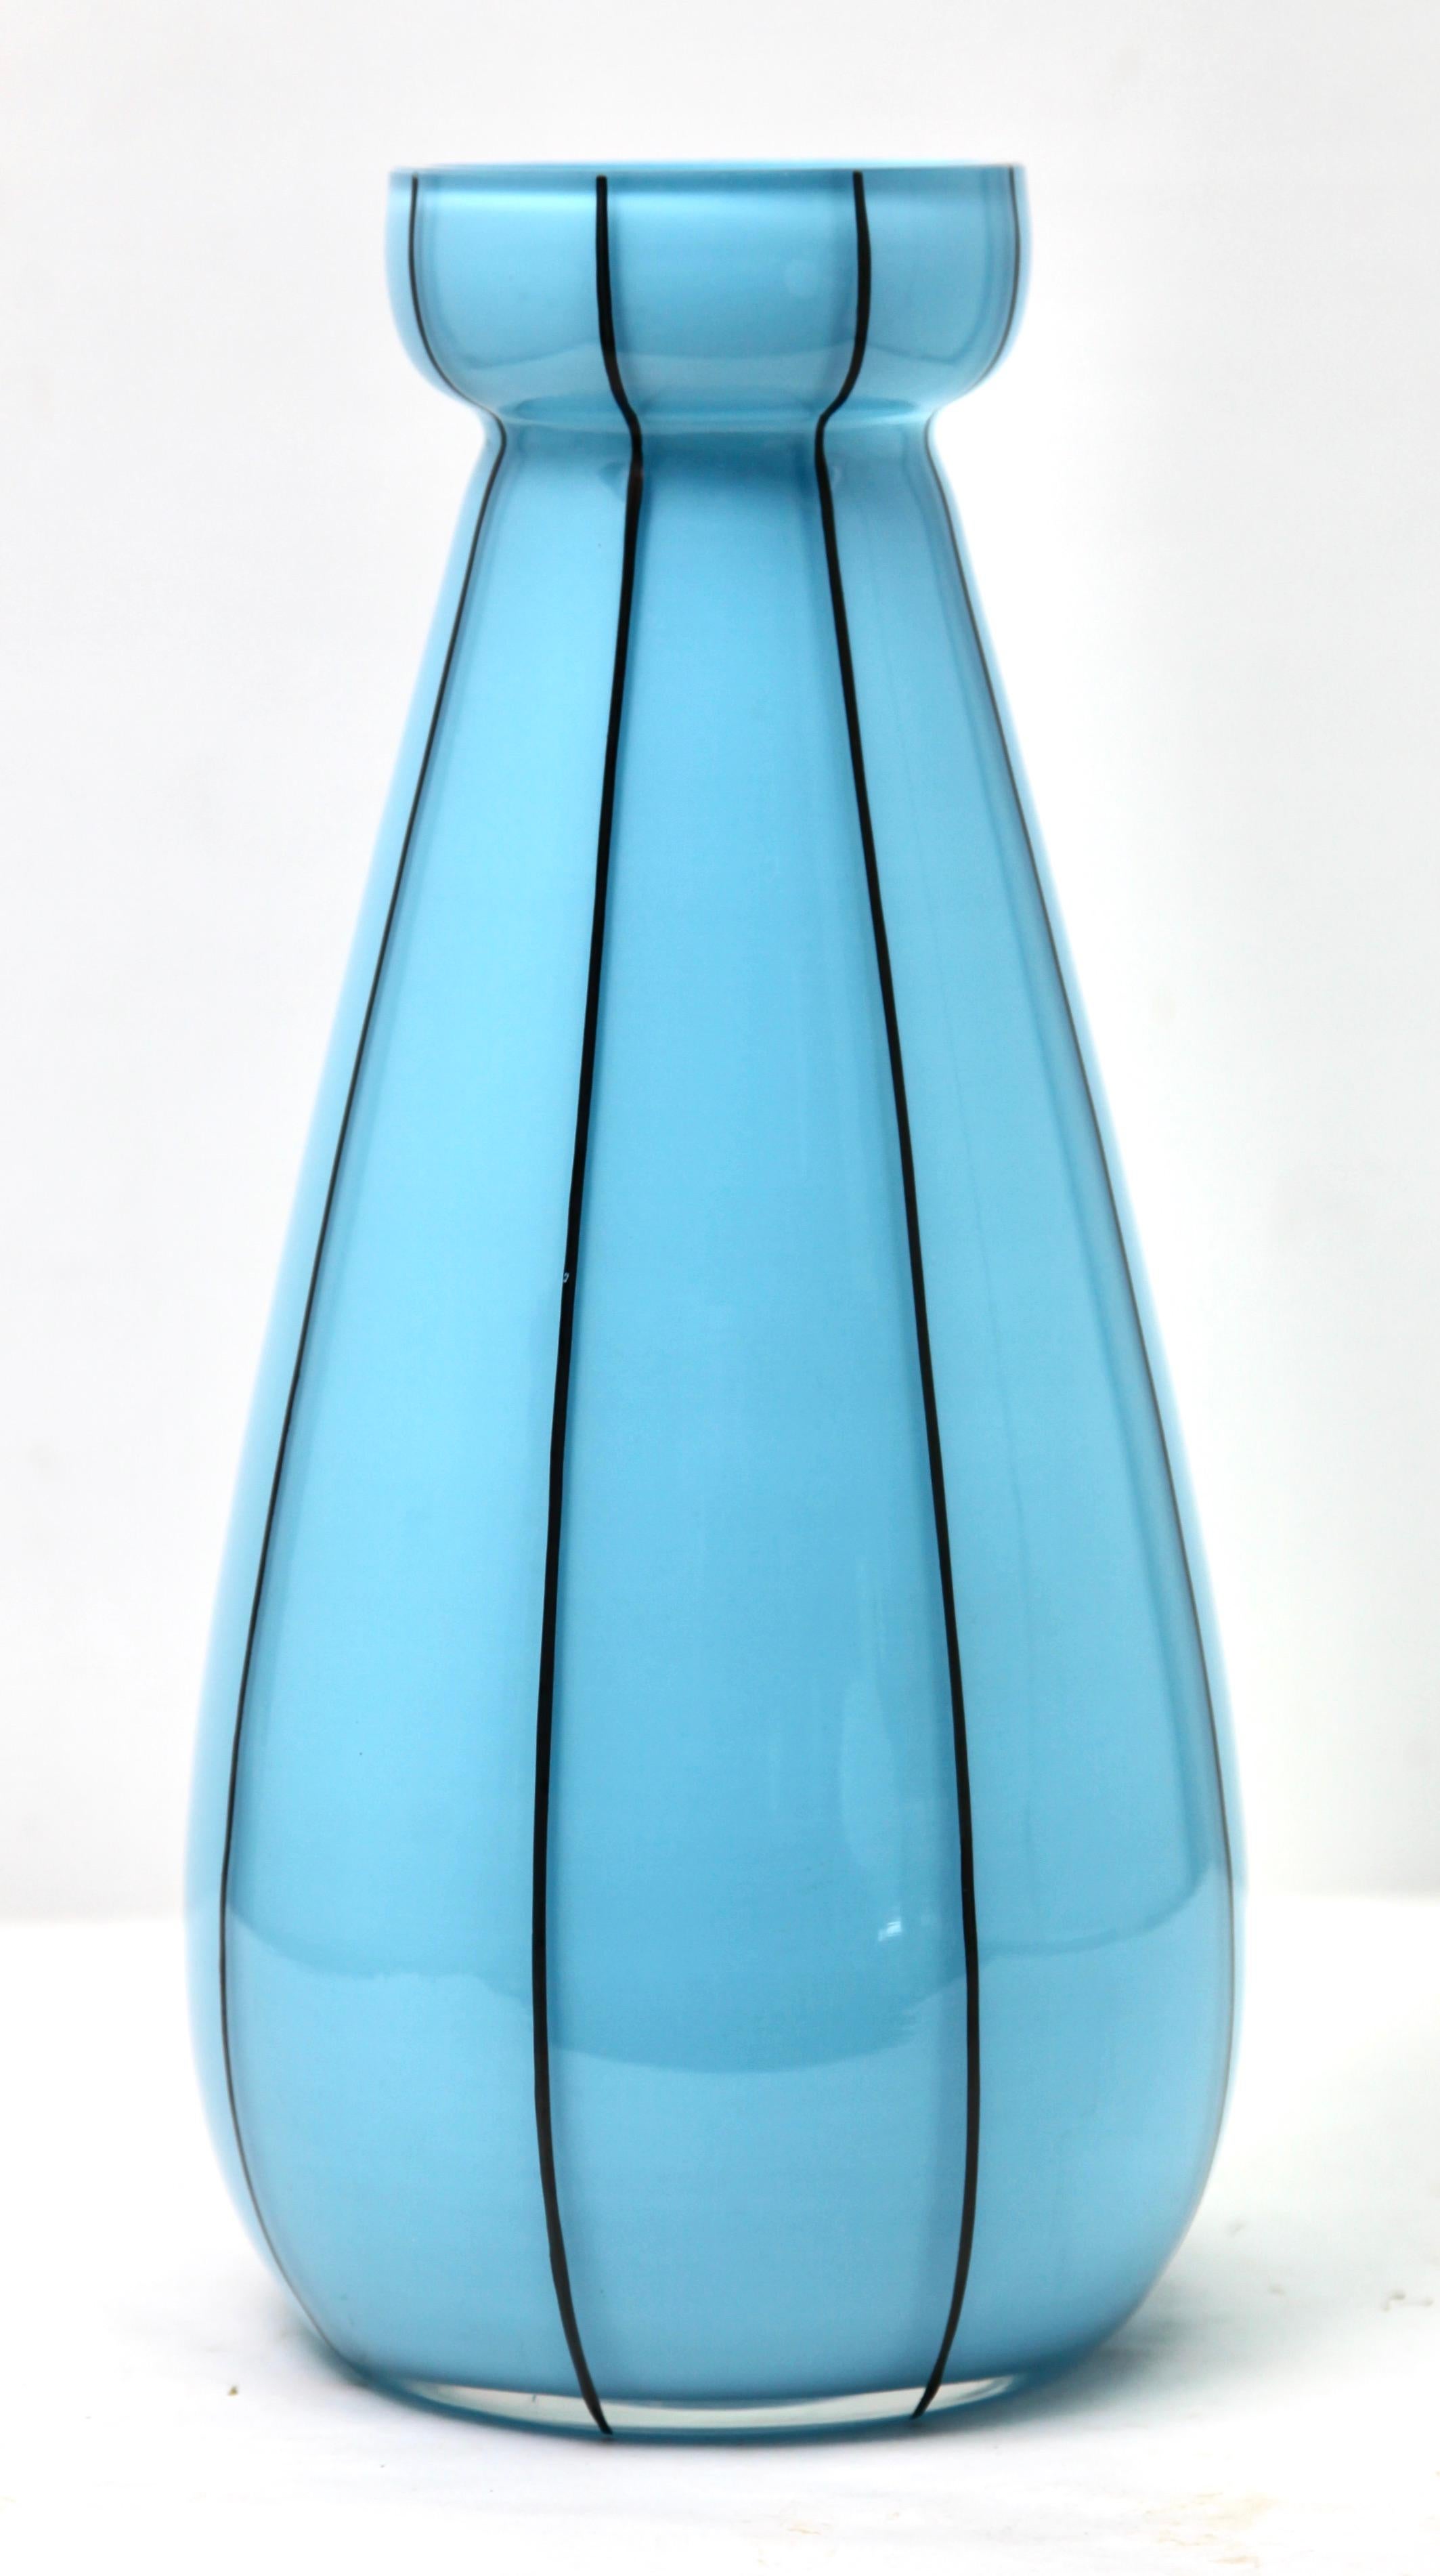 Vasen aus Opalglas in Babyblau, Frankreich, um 1950

Französische Opalvase aus opakem, babyblauem Glas.
Die handbemalte dekorierte Vase stammt aus der Zeit um 1950. 
Die ungewöhnliche Farbe und das Design machen sie sehr begehrt.
 In gutem